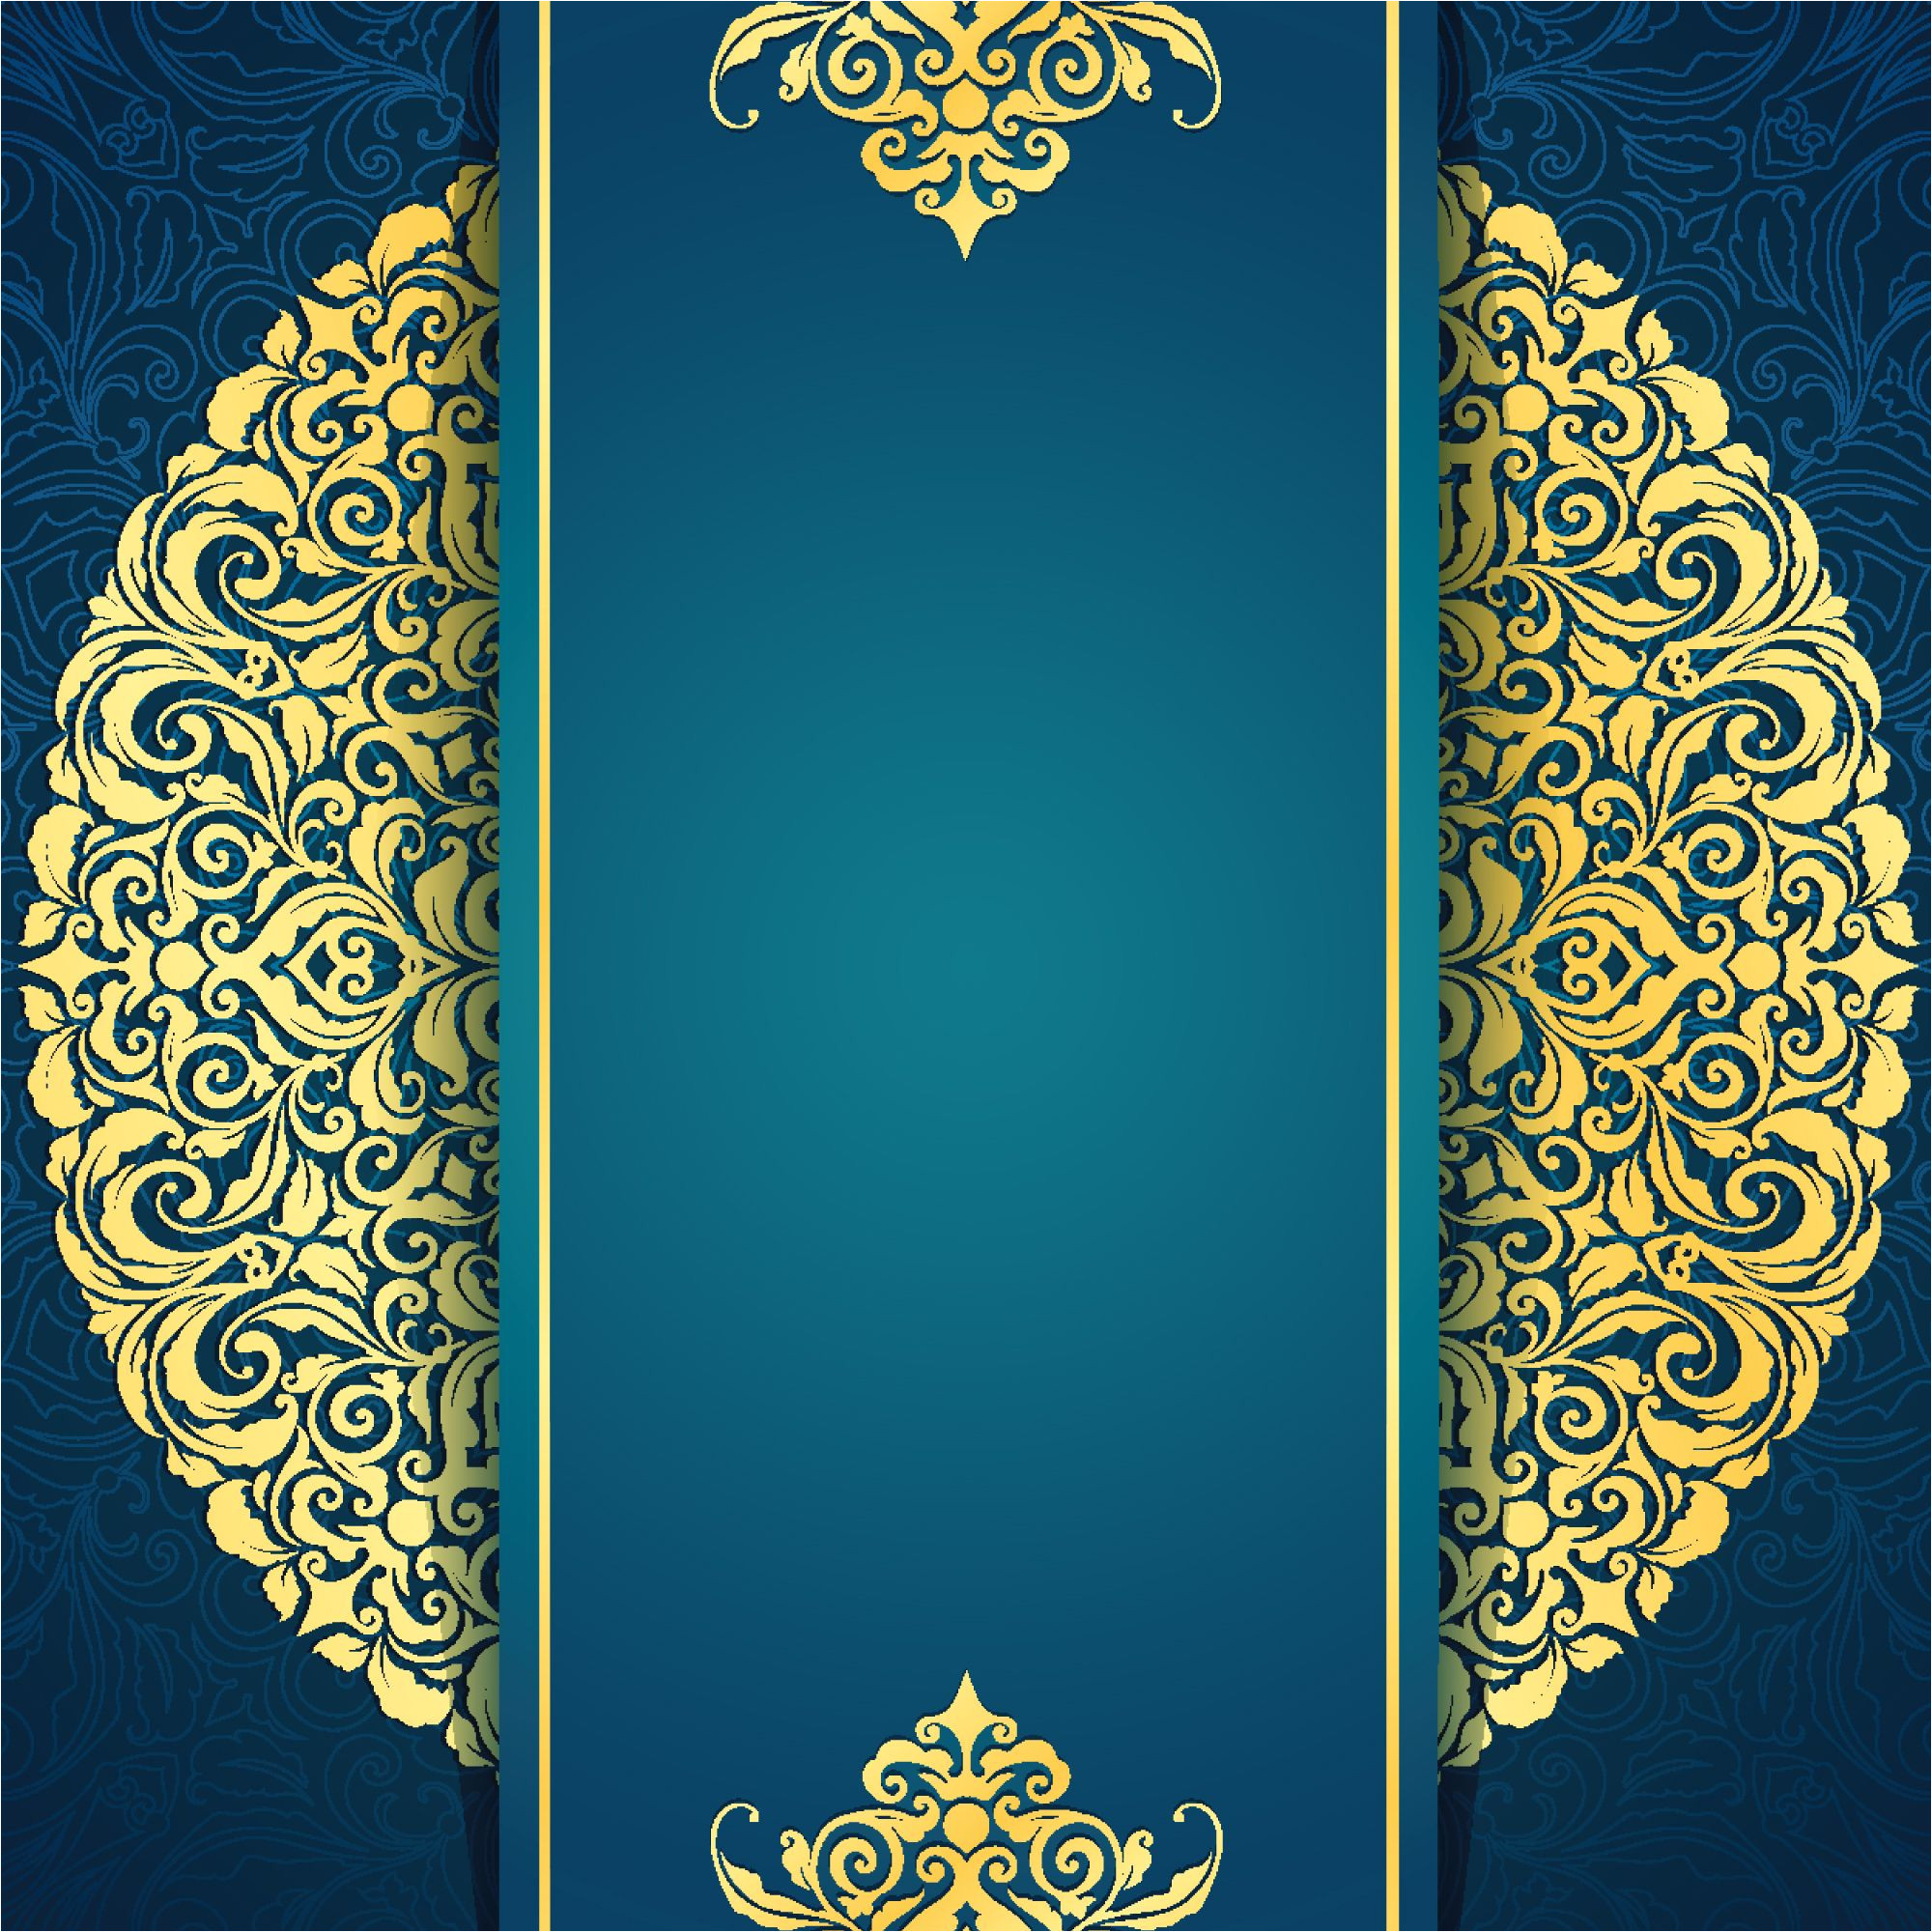 Hindu Wedding Card Background Images 14 Elegant Invitation Card Background Images Images with